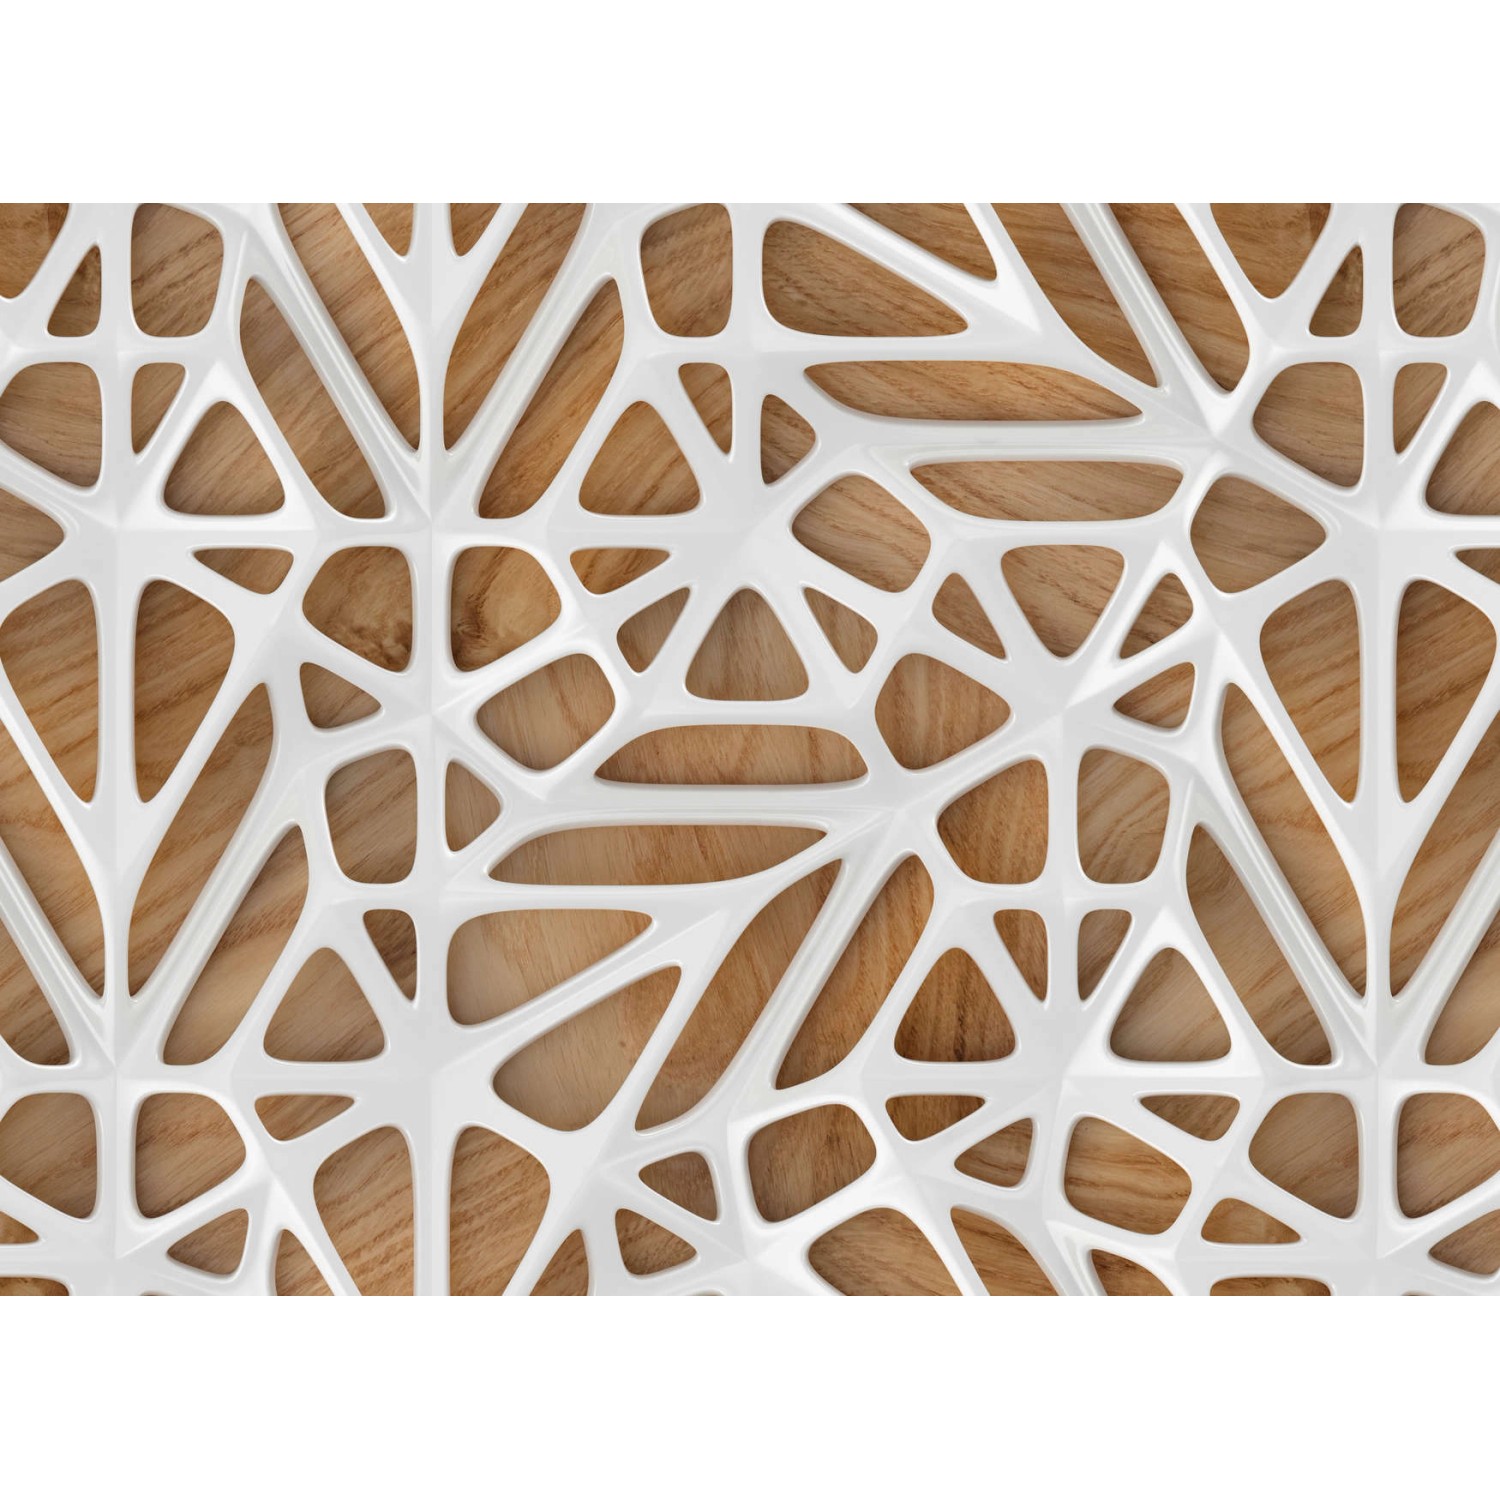 Fototapete Holzoptik Orgnisches Muster Weiß Braun 3,50 m x 2,55 m FSC® von -